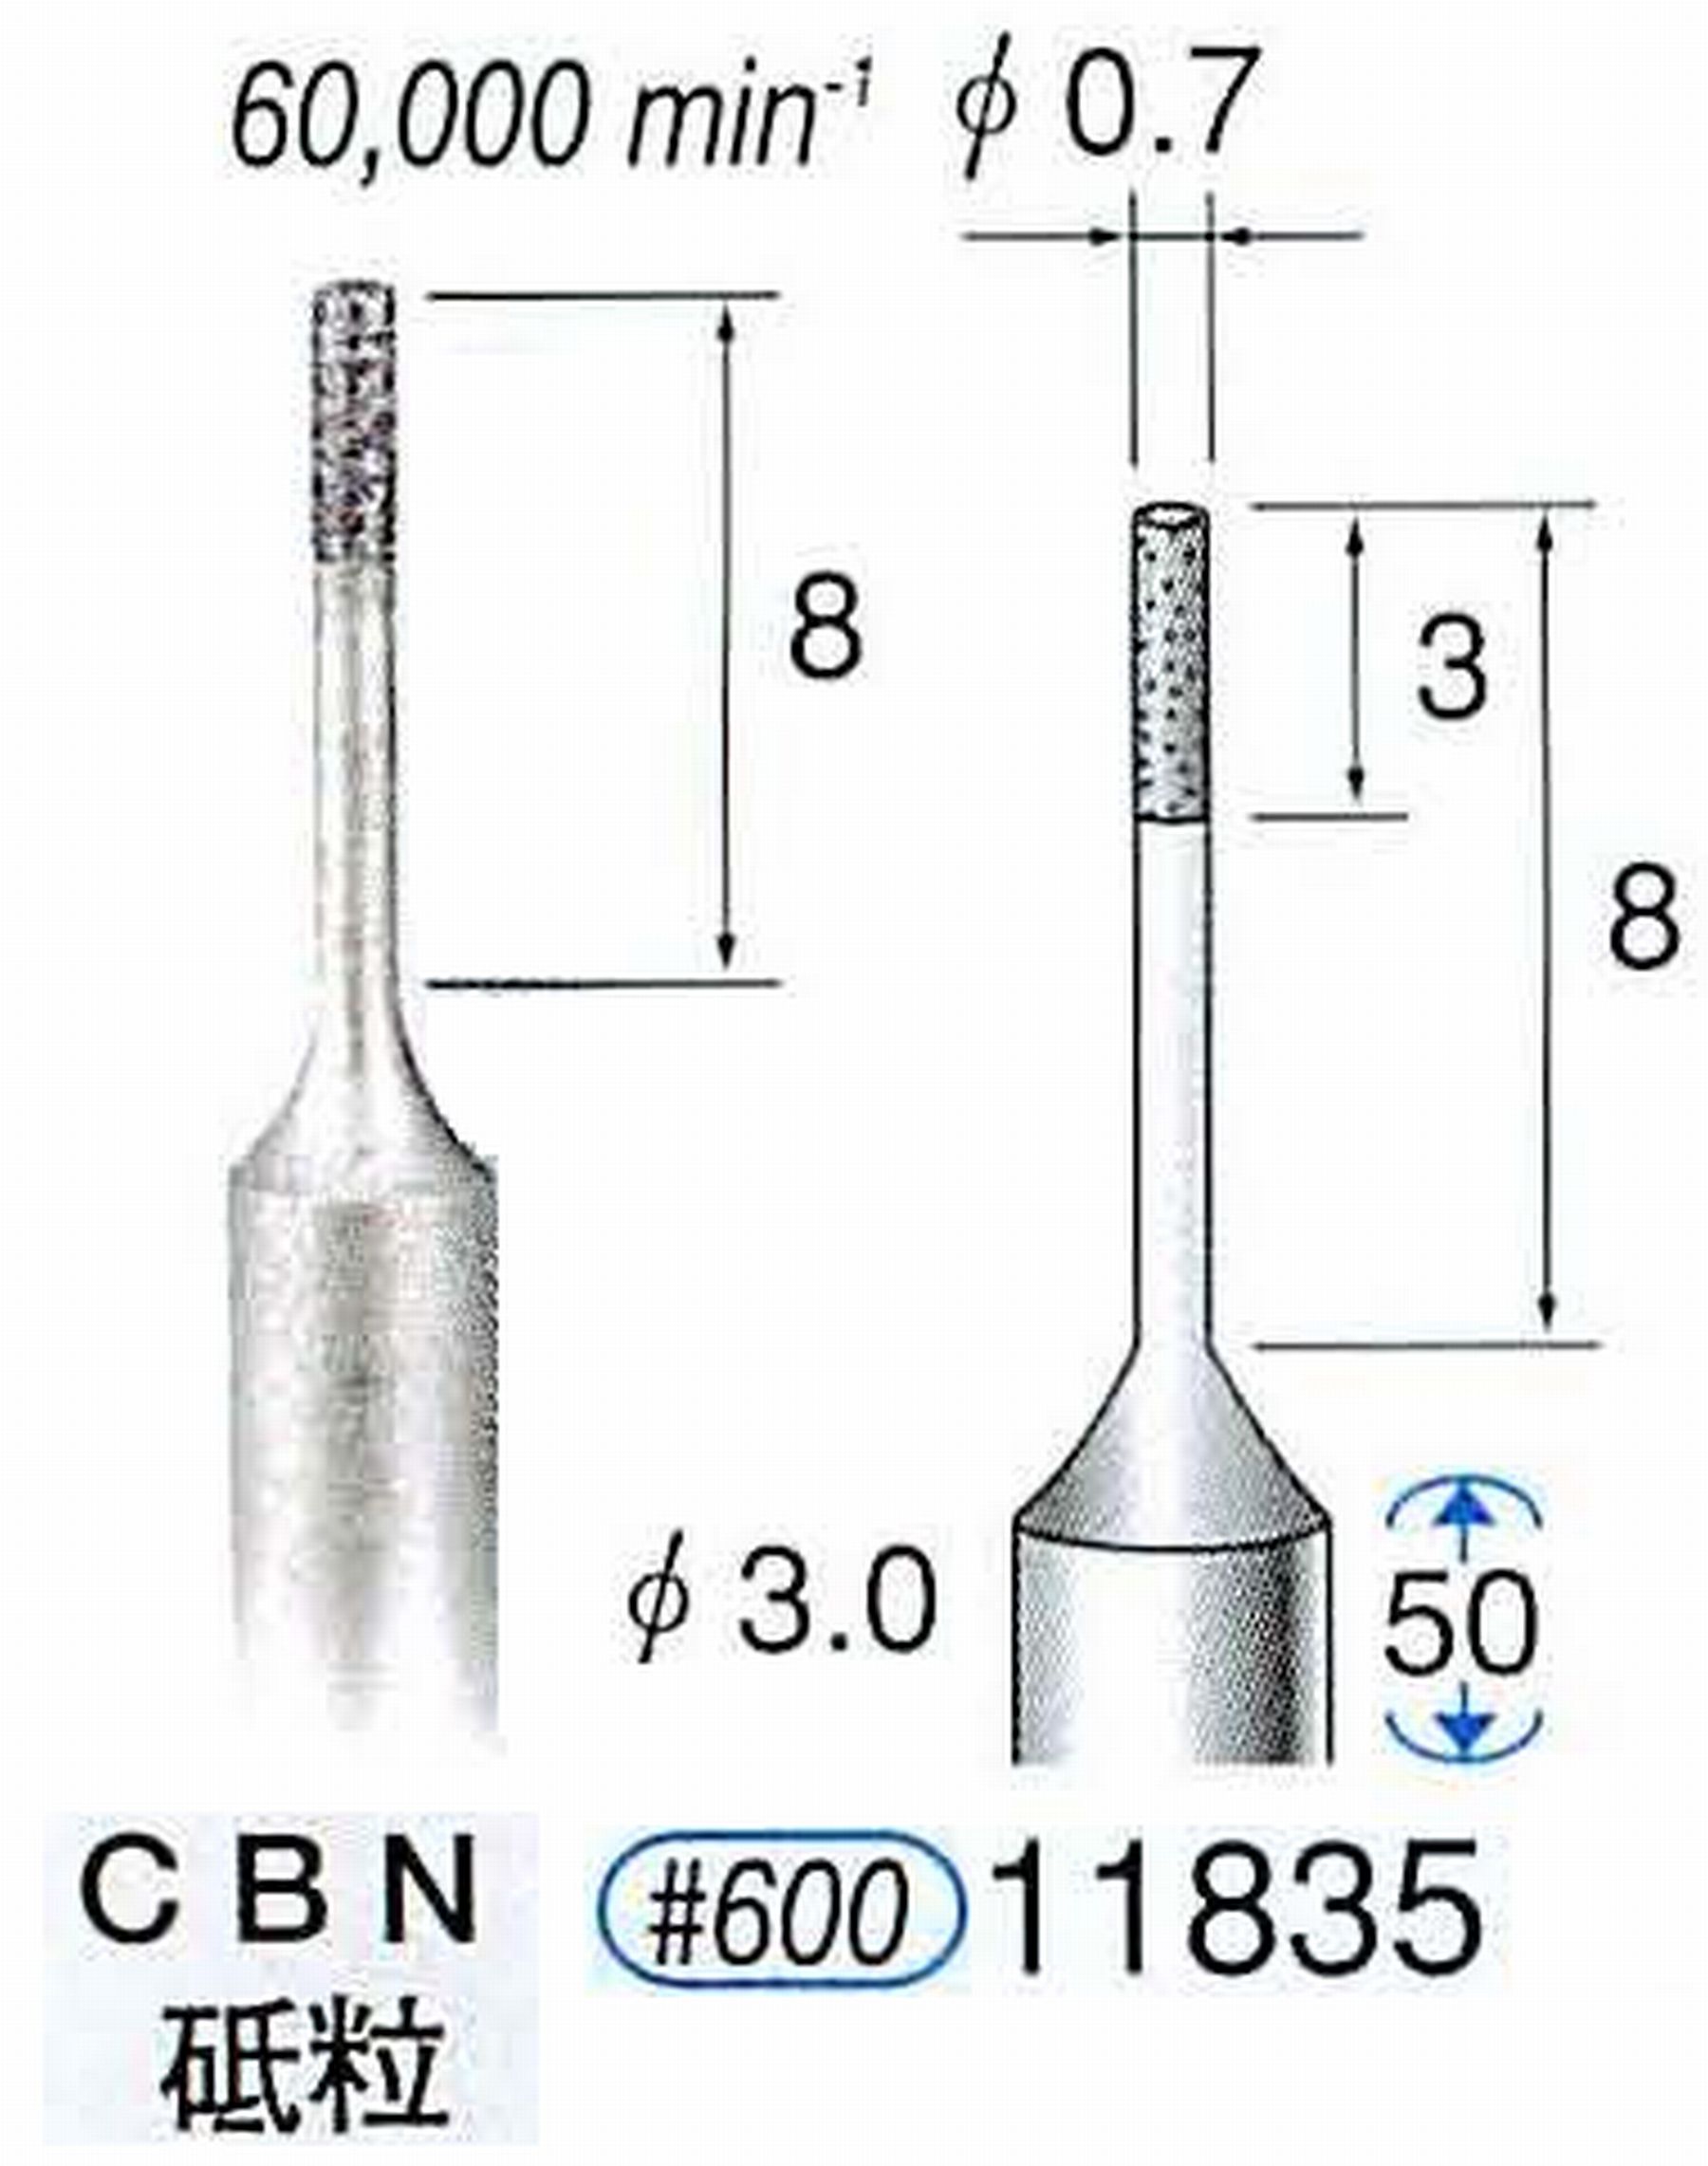 ナカニシ/NAKANISHI SP電着CBNバー CBN砥粒 軸径(シャンク)φ3.0mm 11835